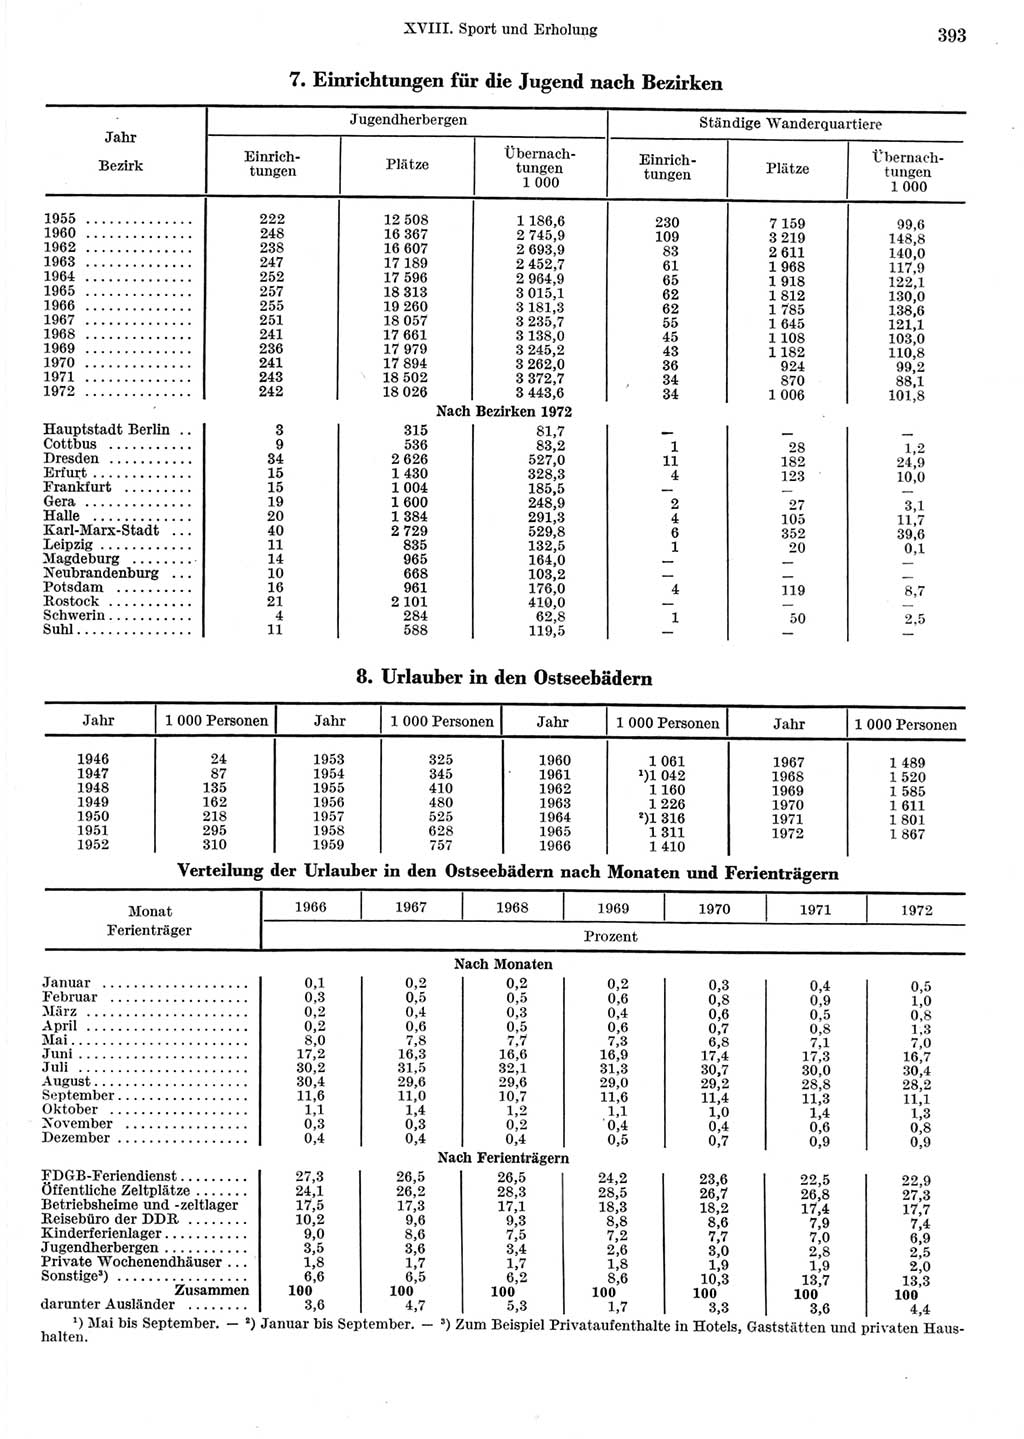 Statistisches Jahrbuch der Deutschen Demokratischen Republik (DDR) 1973, Seite 393 (Stat. Jb. DDR 1973, S. 393)